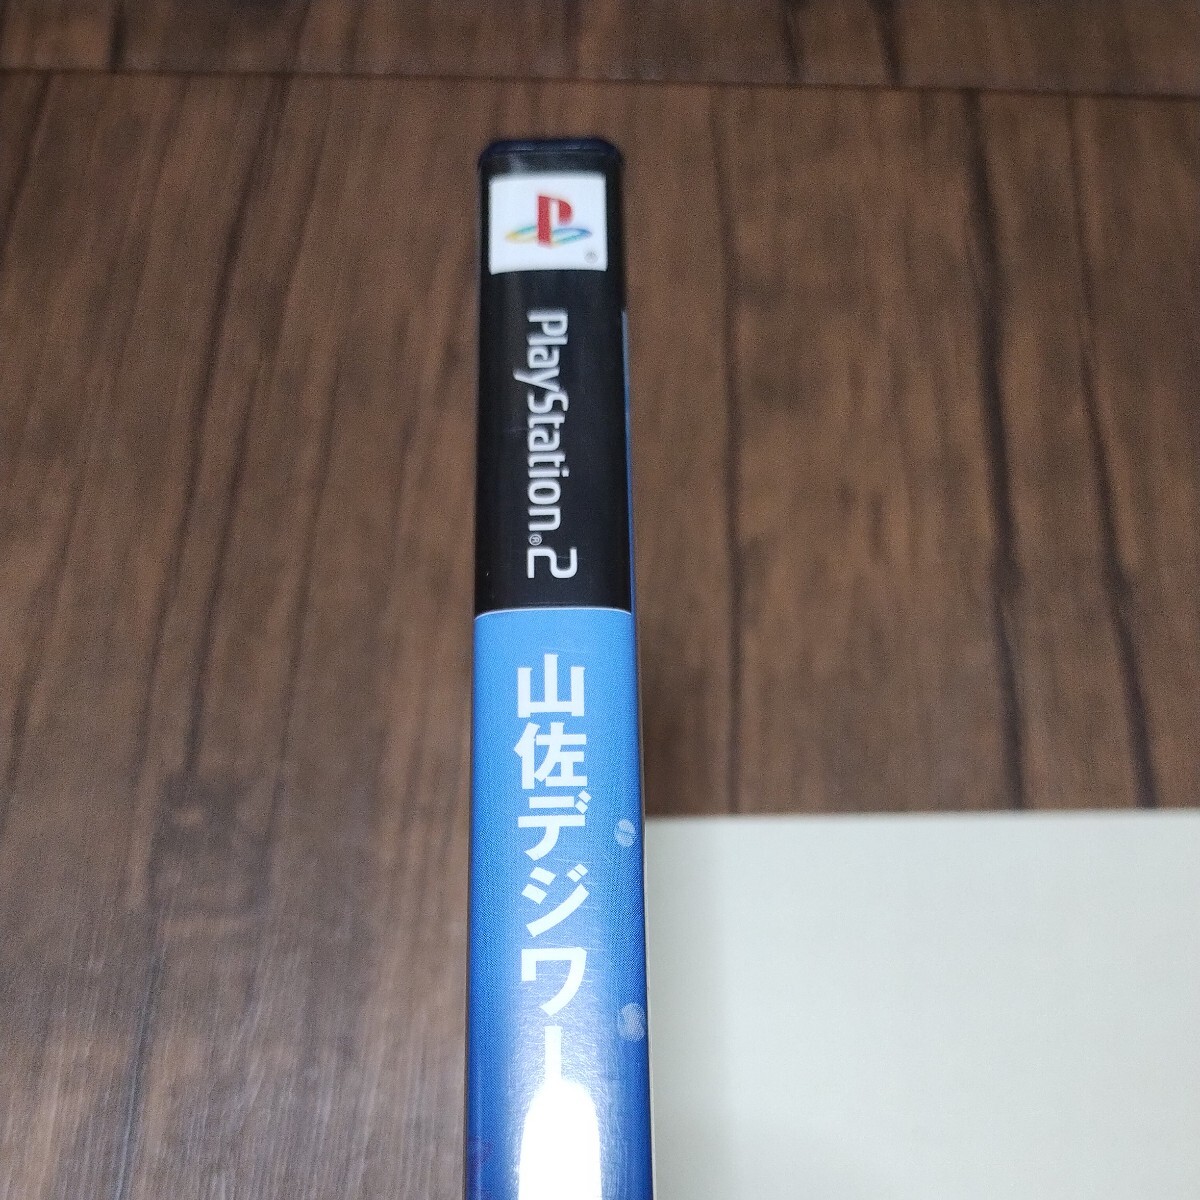 PlayStation2 PlayStation 2 PlayStation 2 PS2 PS soft б/у гора .teji world SP море самый Ryamasaumiichi van 4 серийный номер игровой автомат труба z